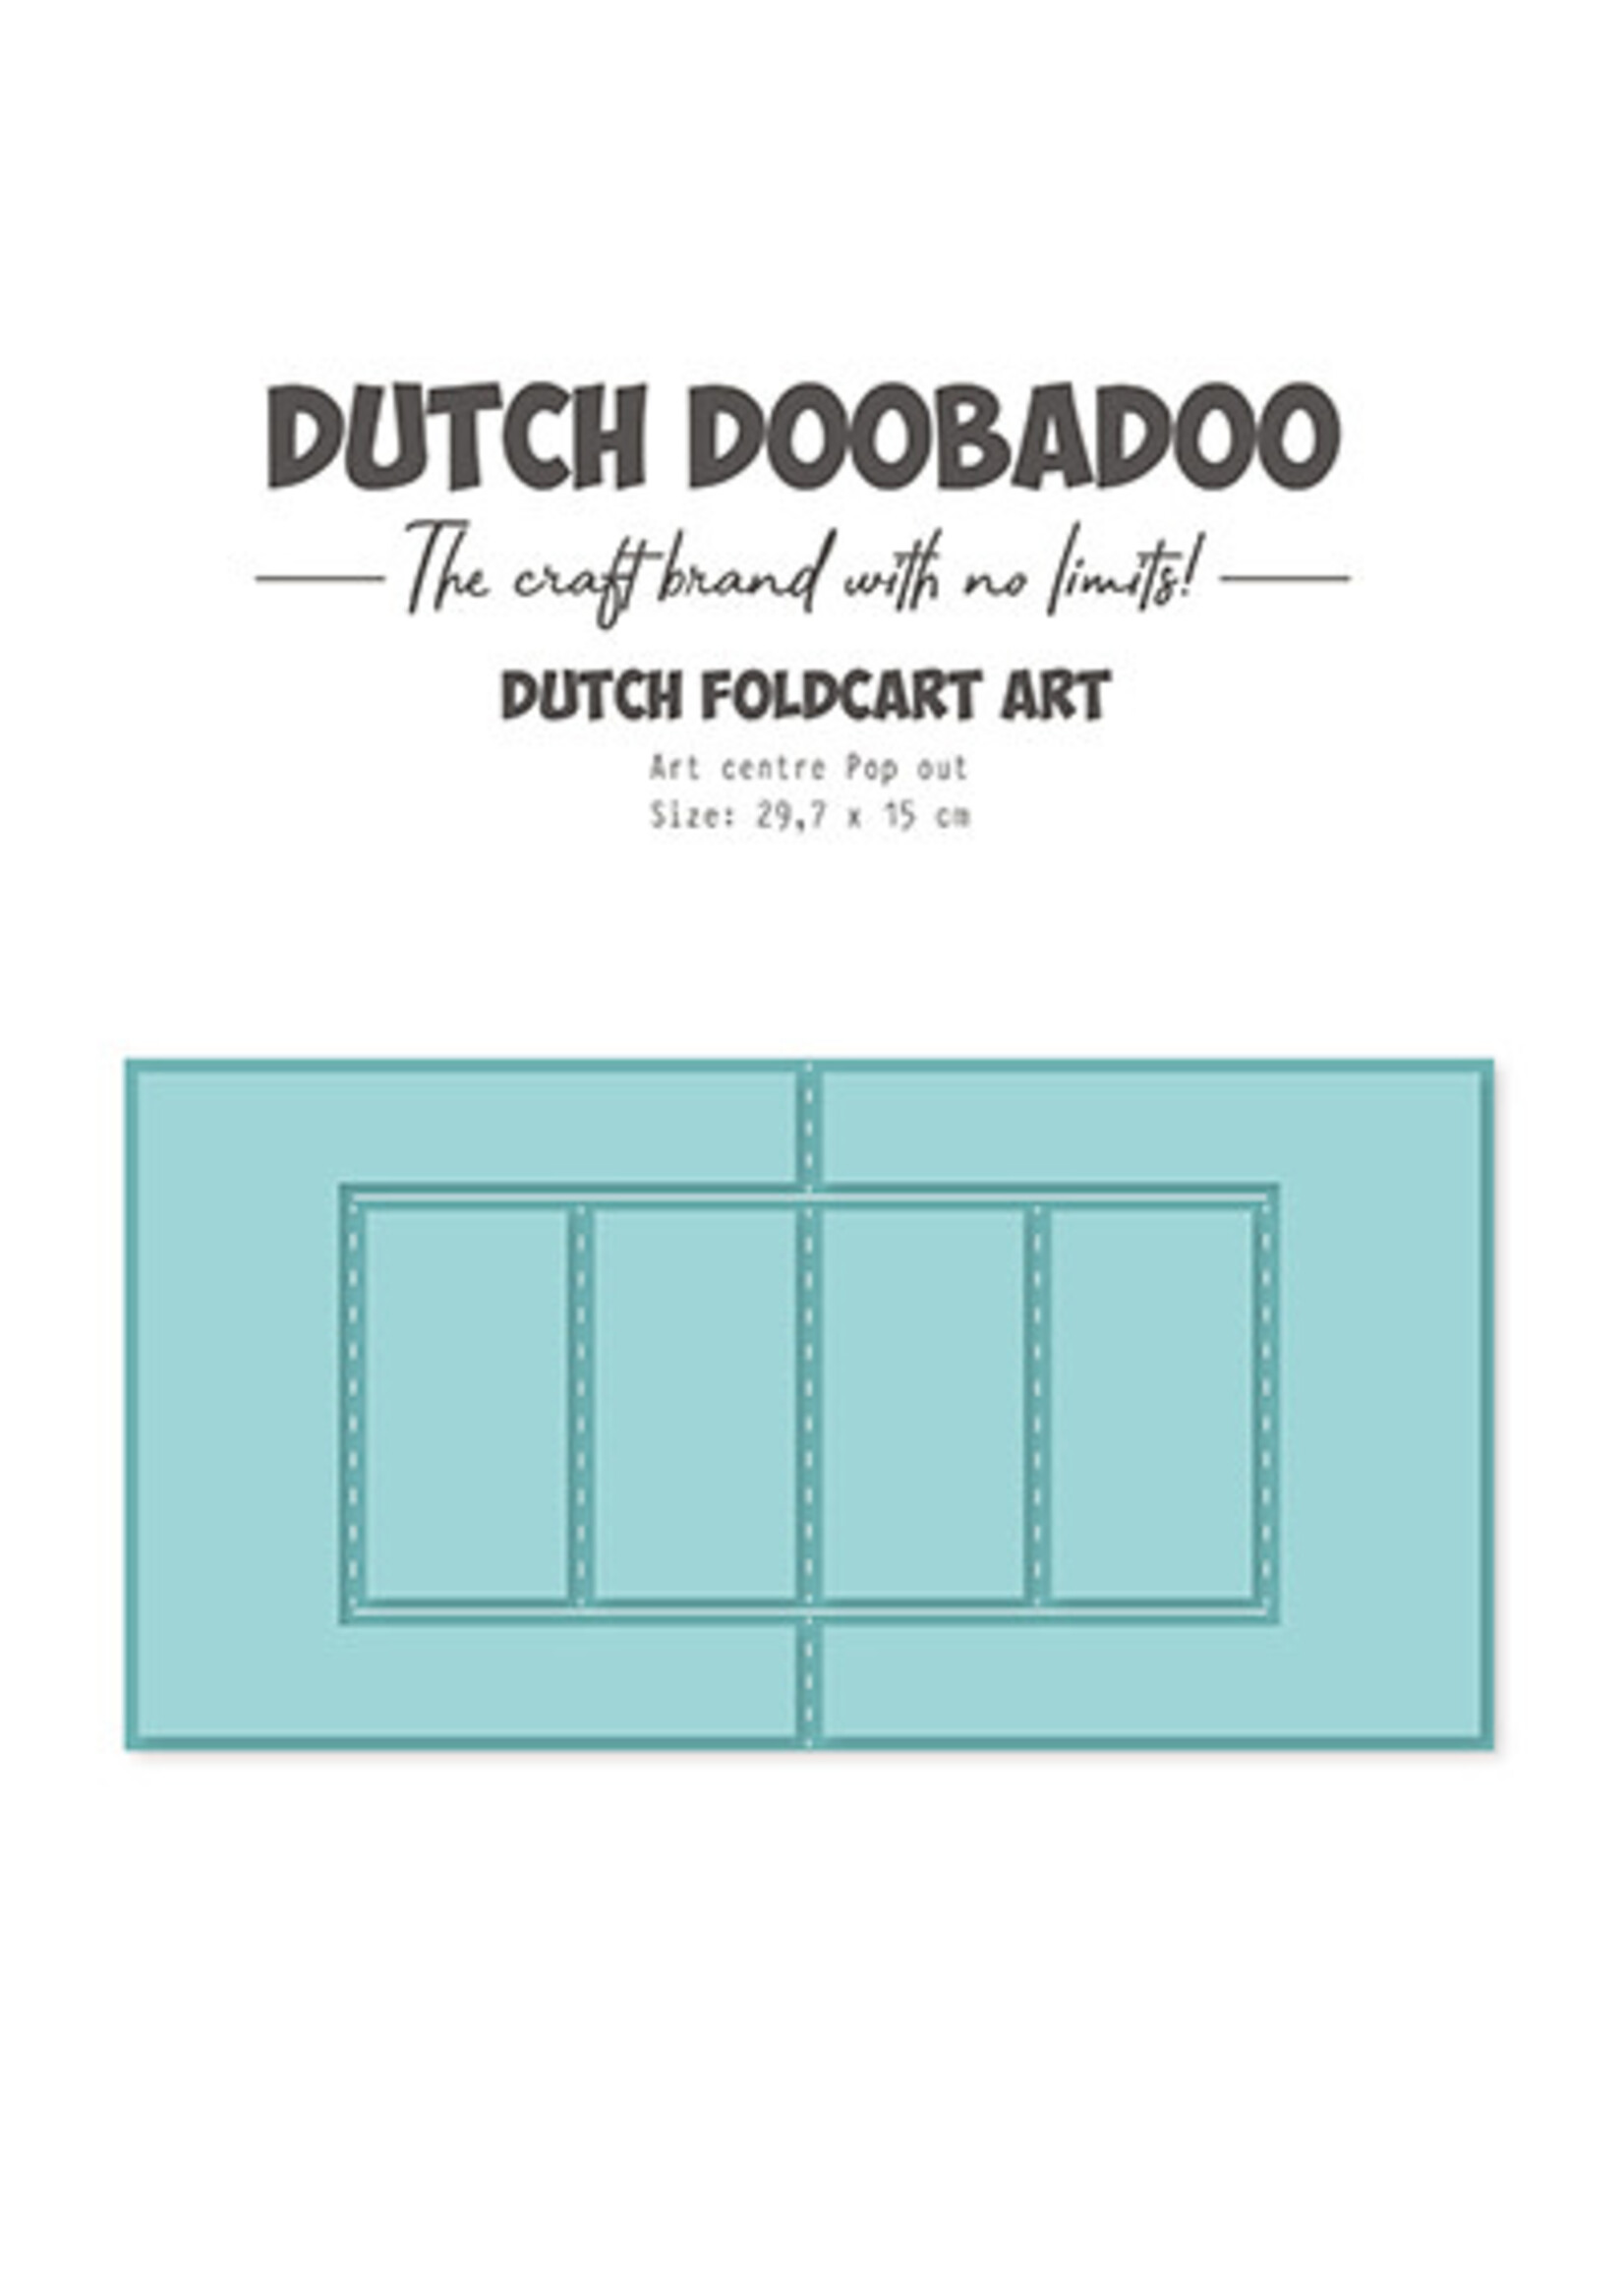 Dutch Doobadoo 470.784.268 - Card-Art Centre pop out